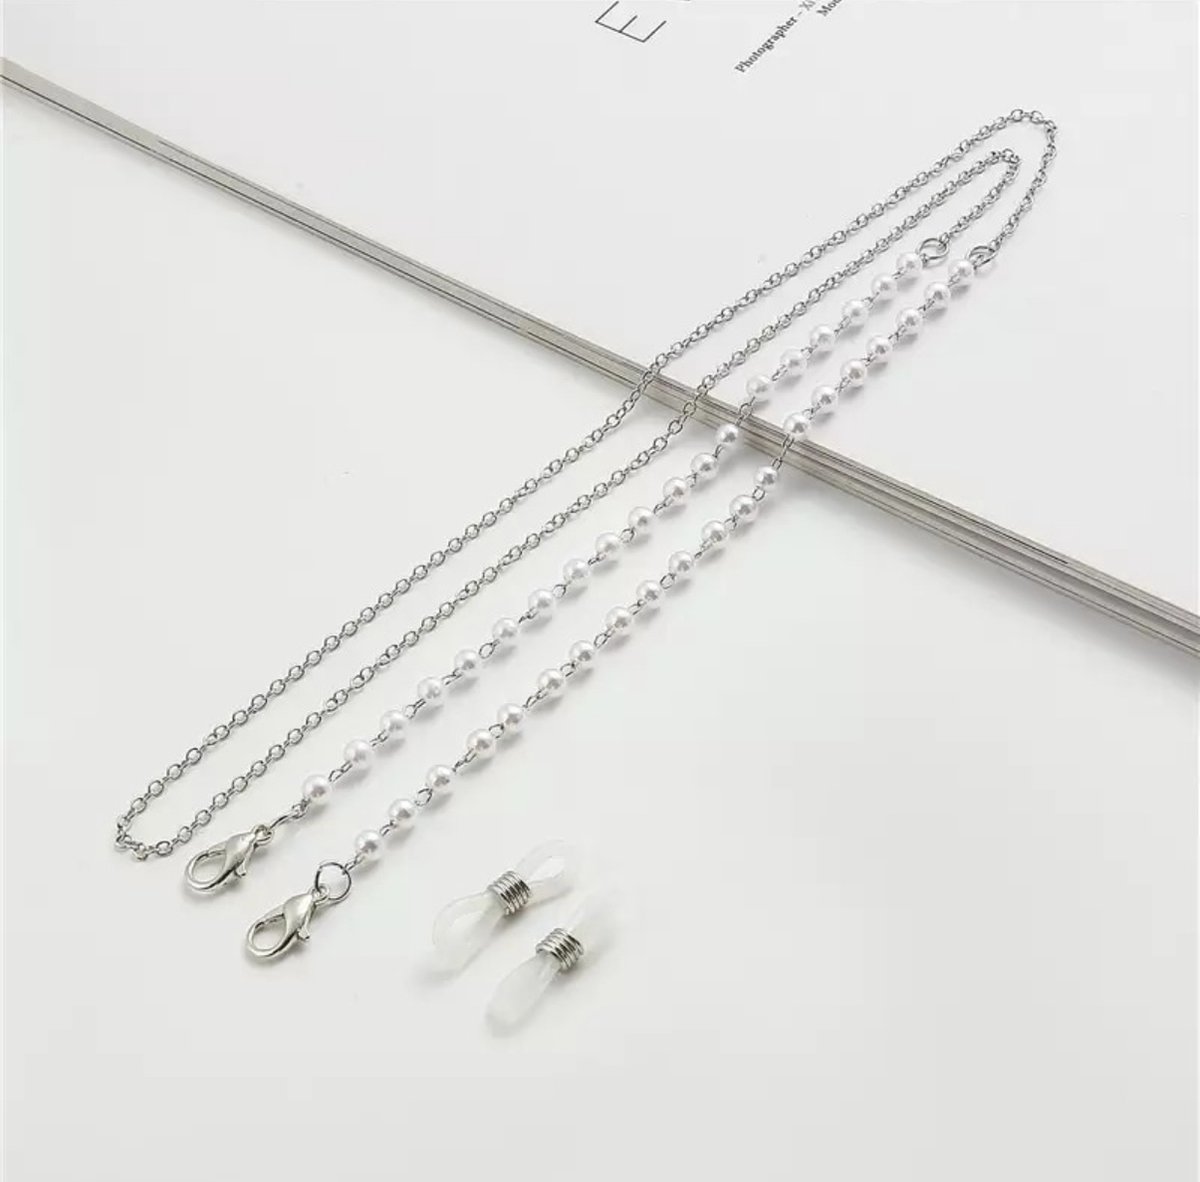 Brillenkoord- brilketting - bril - ketting - zilveren ketting met witte parels